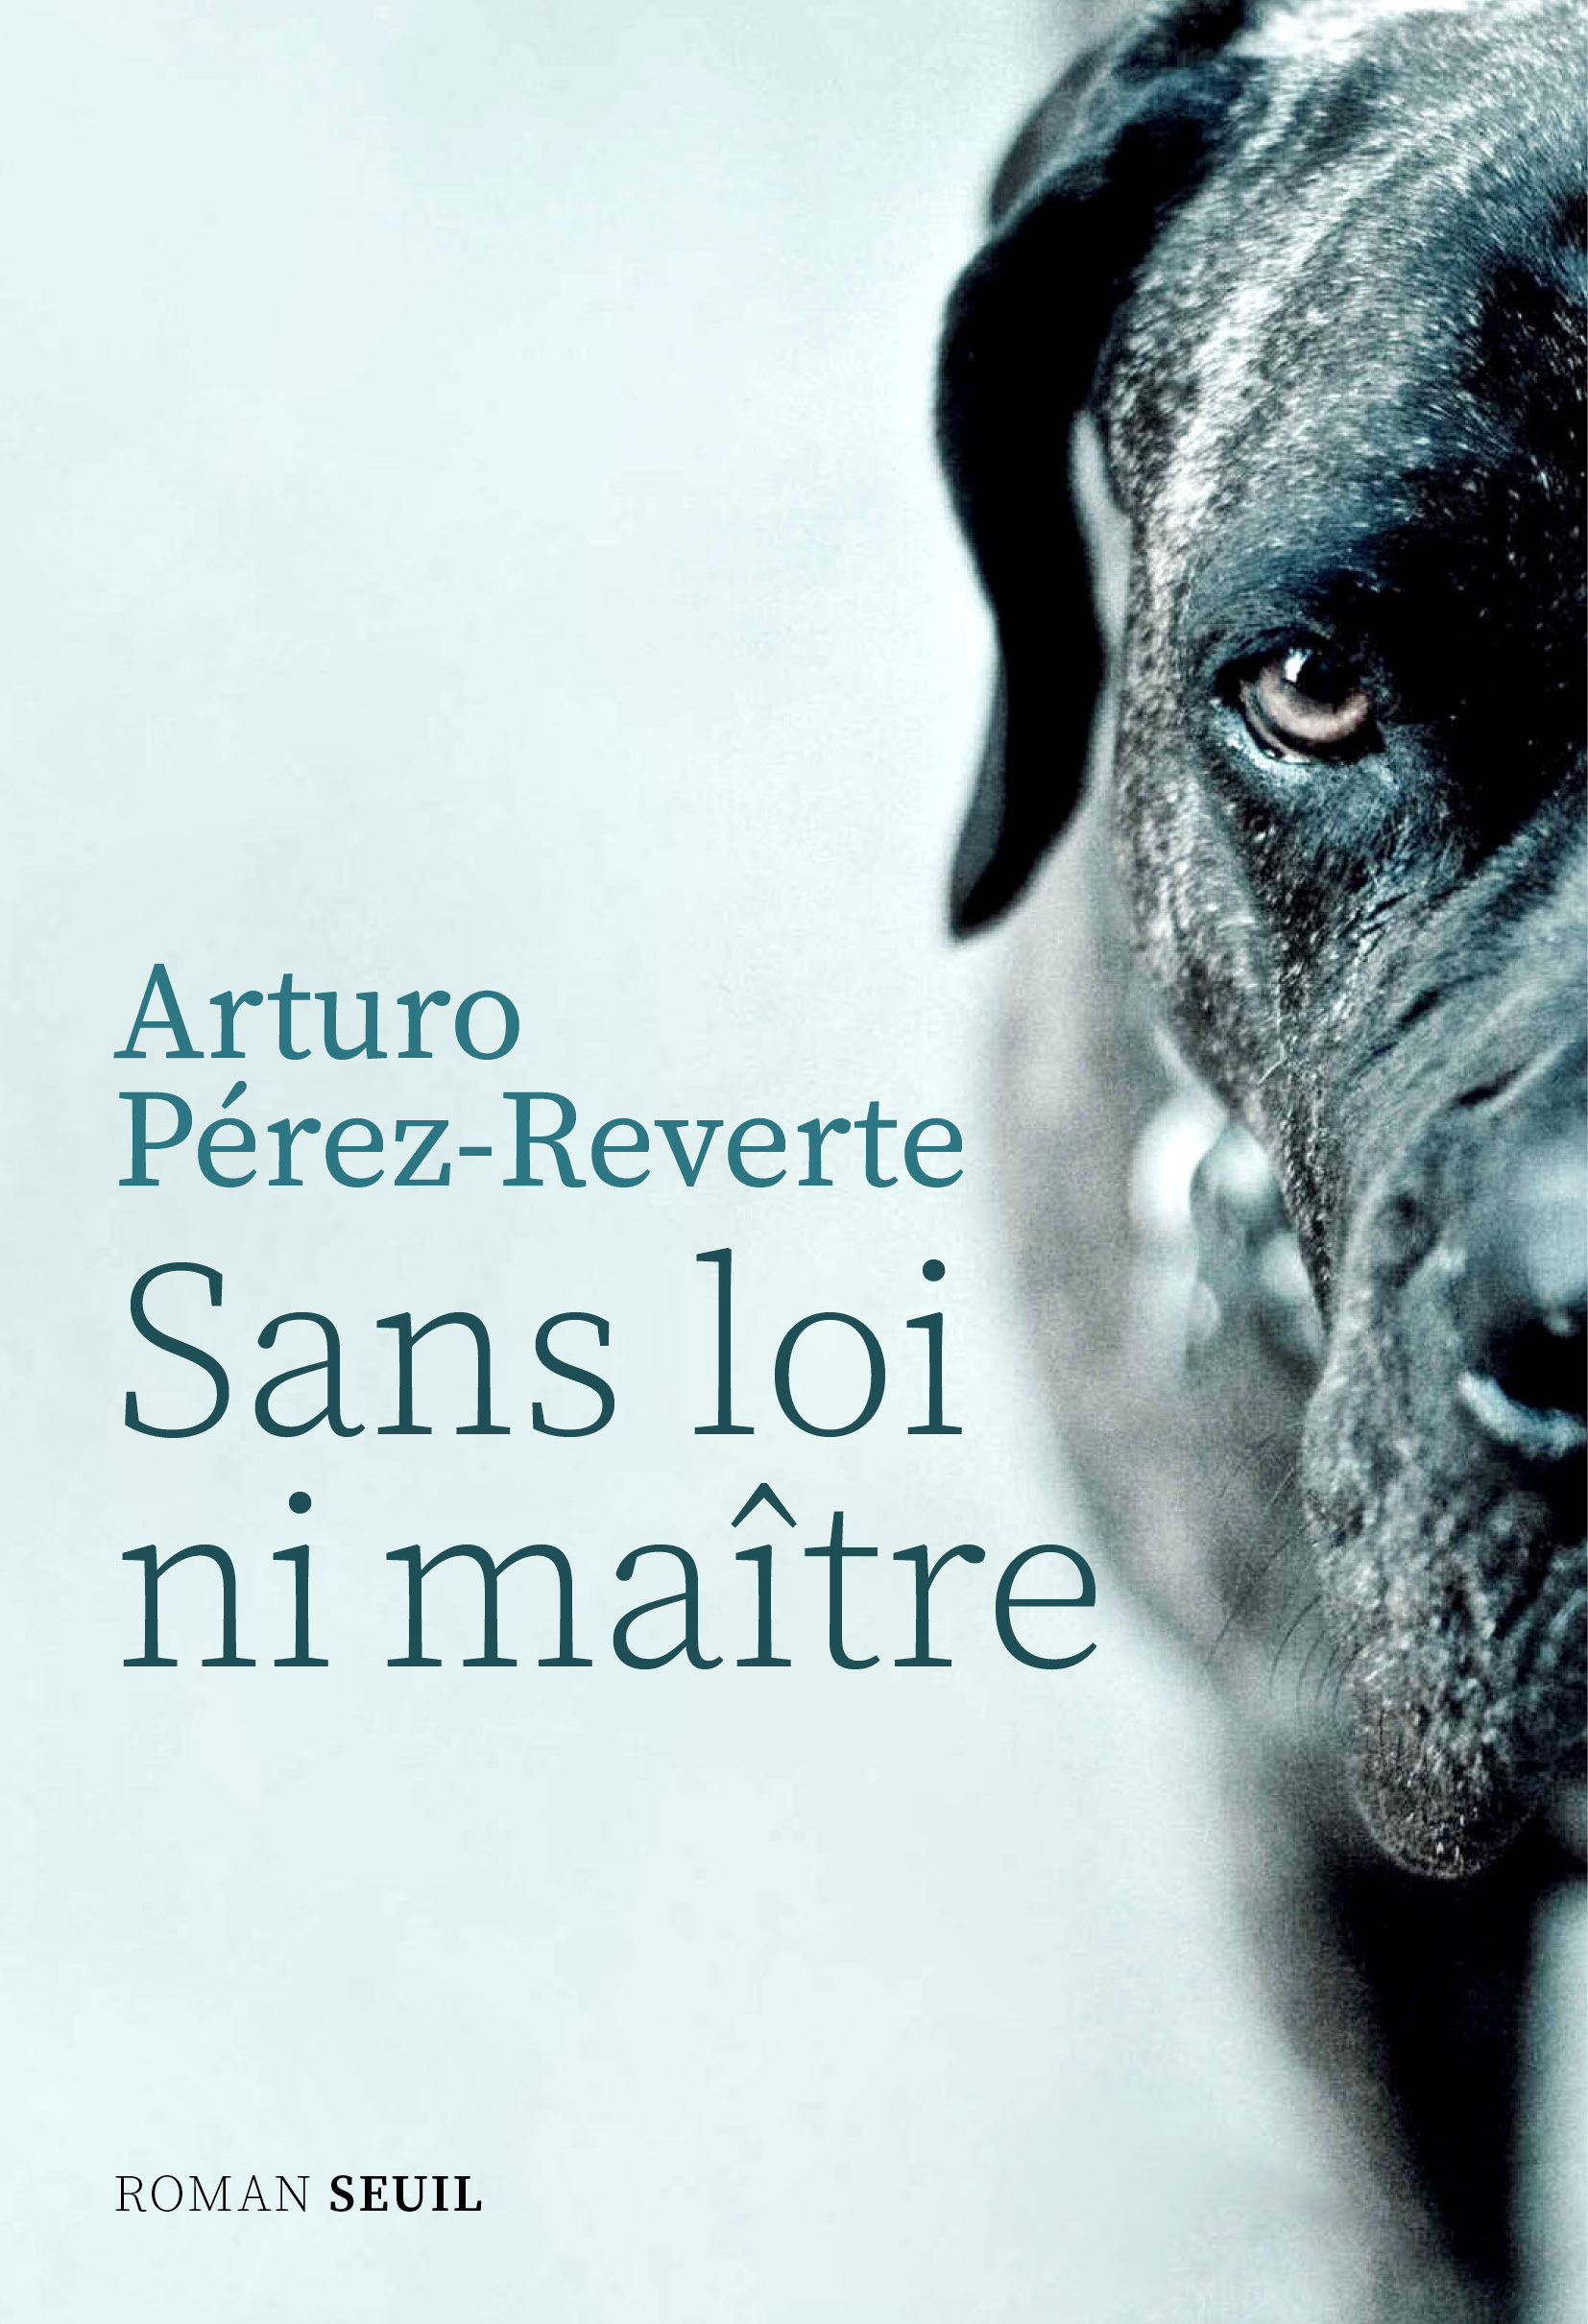 Arturo Pérez-Reverte on Twitter: ""Sin ley ni amo"... Me gusta el título ("Los perros duros no bailan"), pero el francés tampoco está mal. Y la portada es la misma. Sale